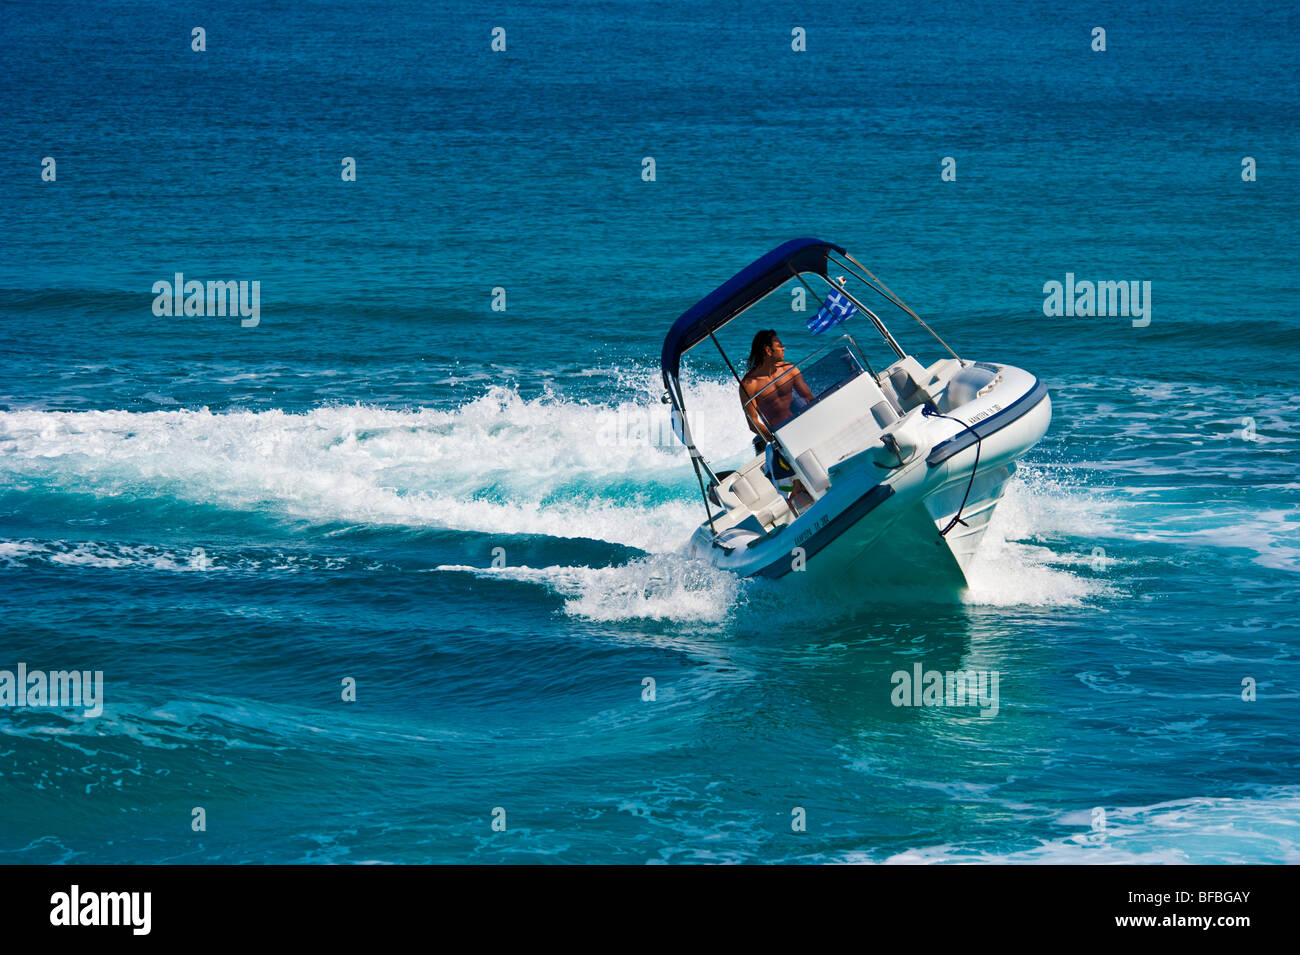 Bateau gonflable blanc courbant avec grande vitesse dans l'eau bleue, Saroic Golf, Grèce Banque D'Images